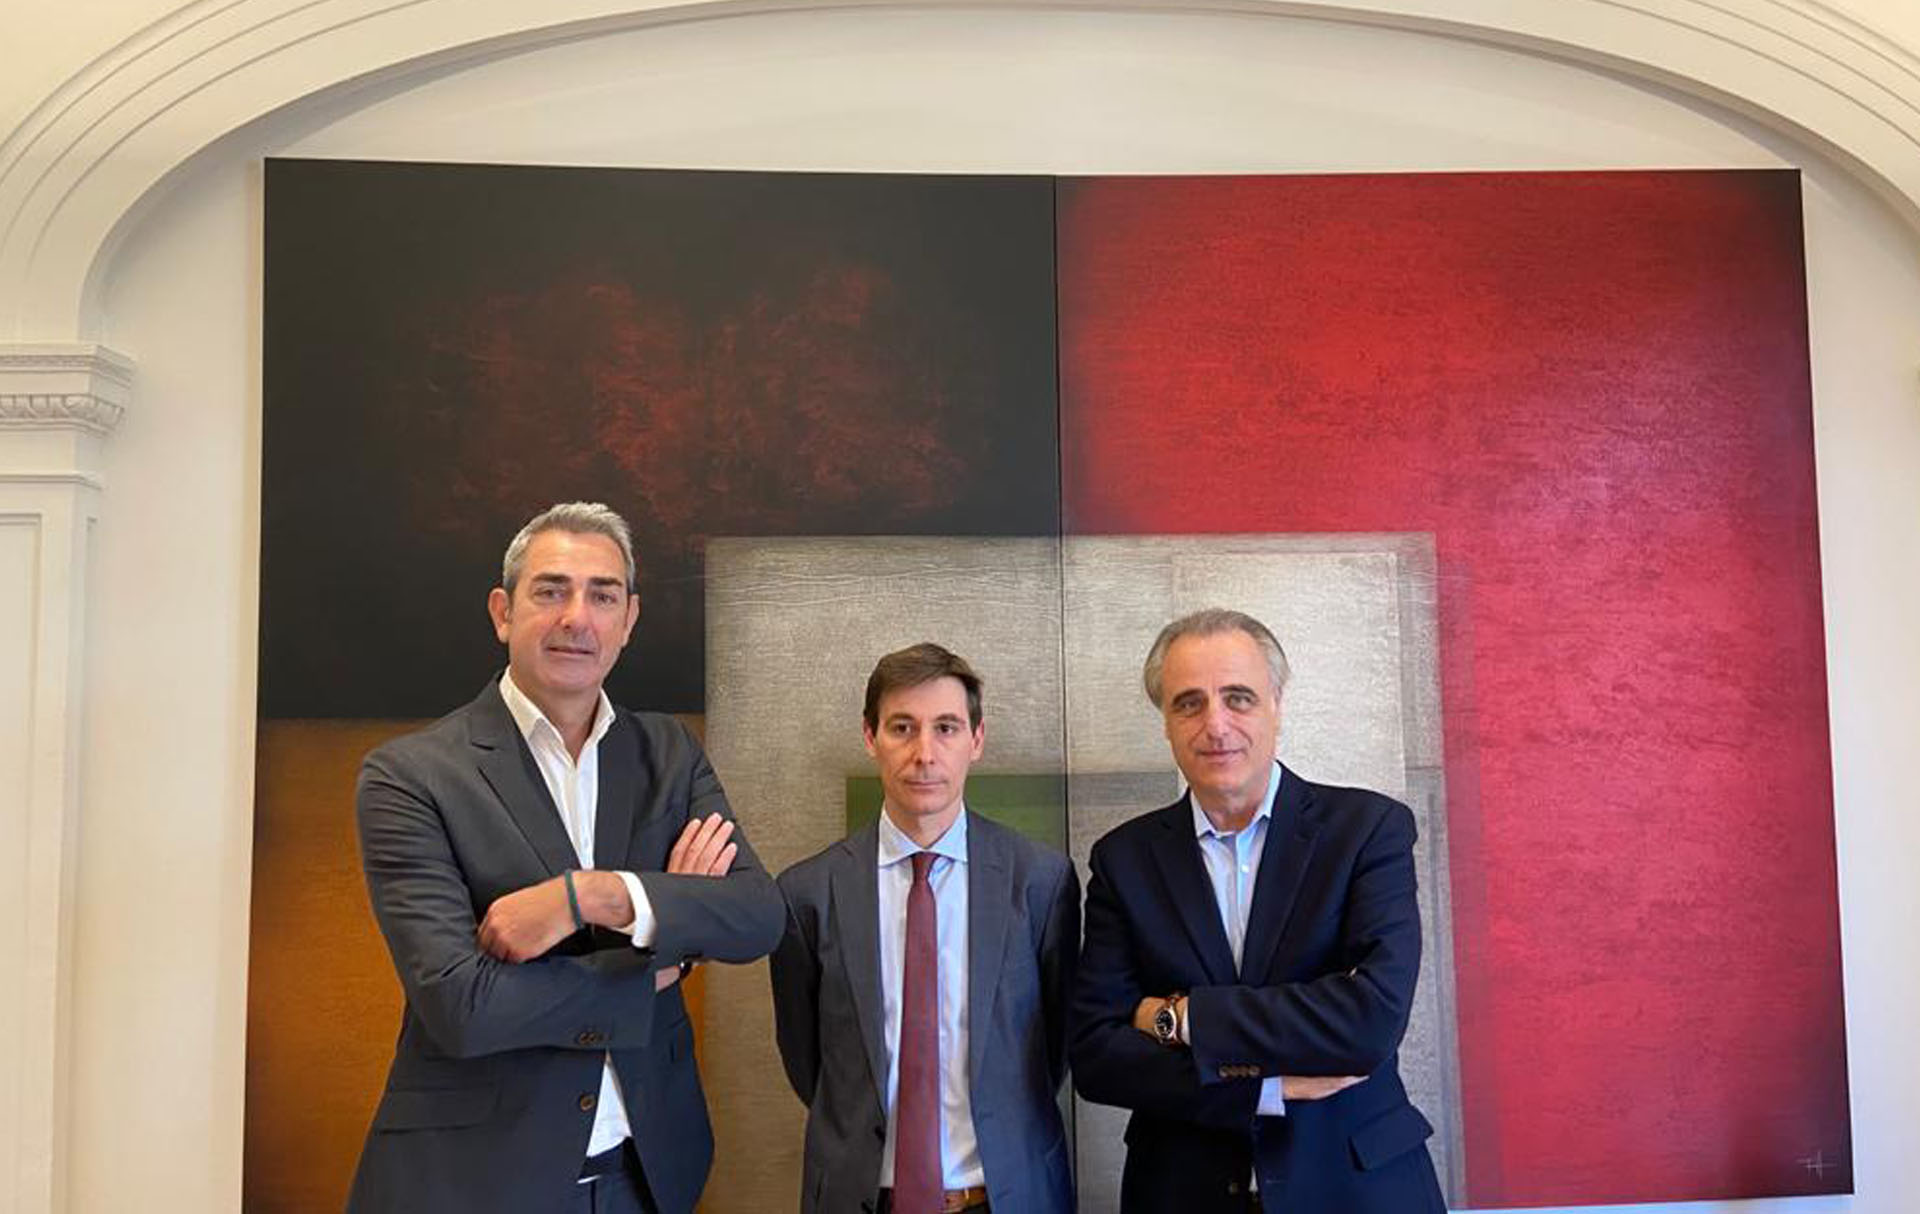 Tres advocats de Molins Defensa Penal destacats pel rànquing Best Lawyers 2021 entre els millors penalistes d’Espanya